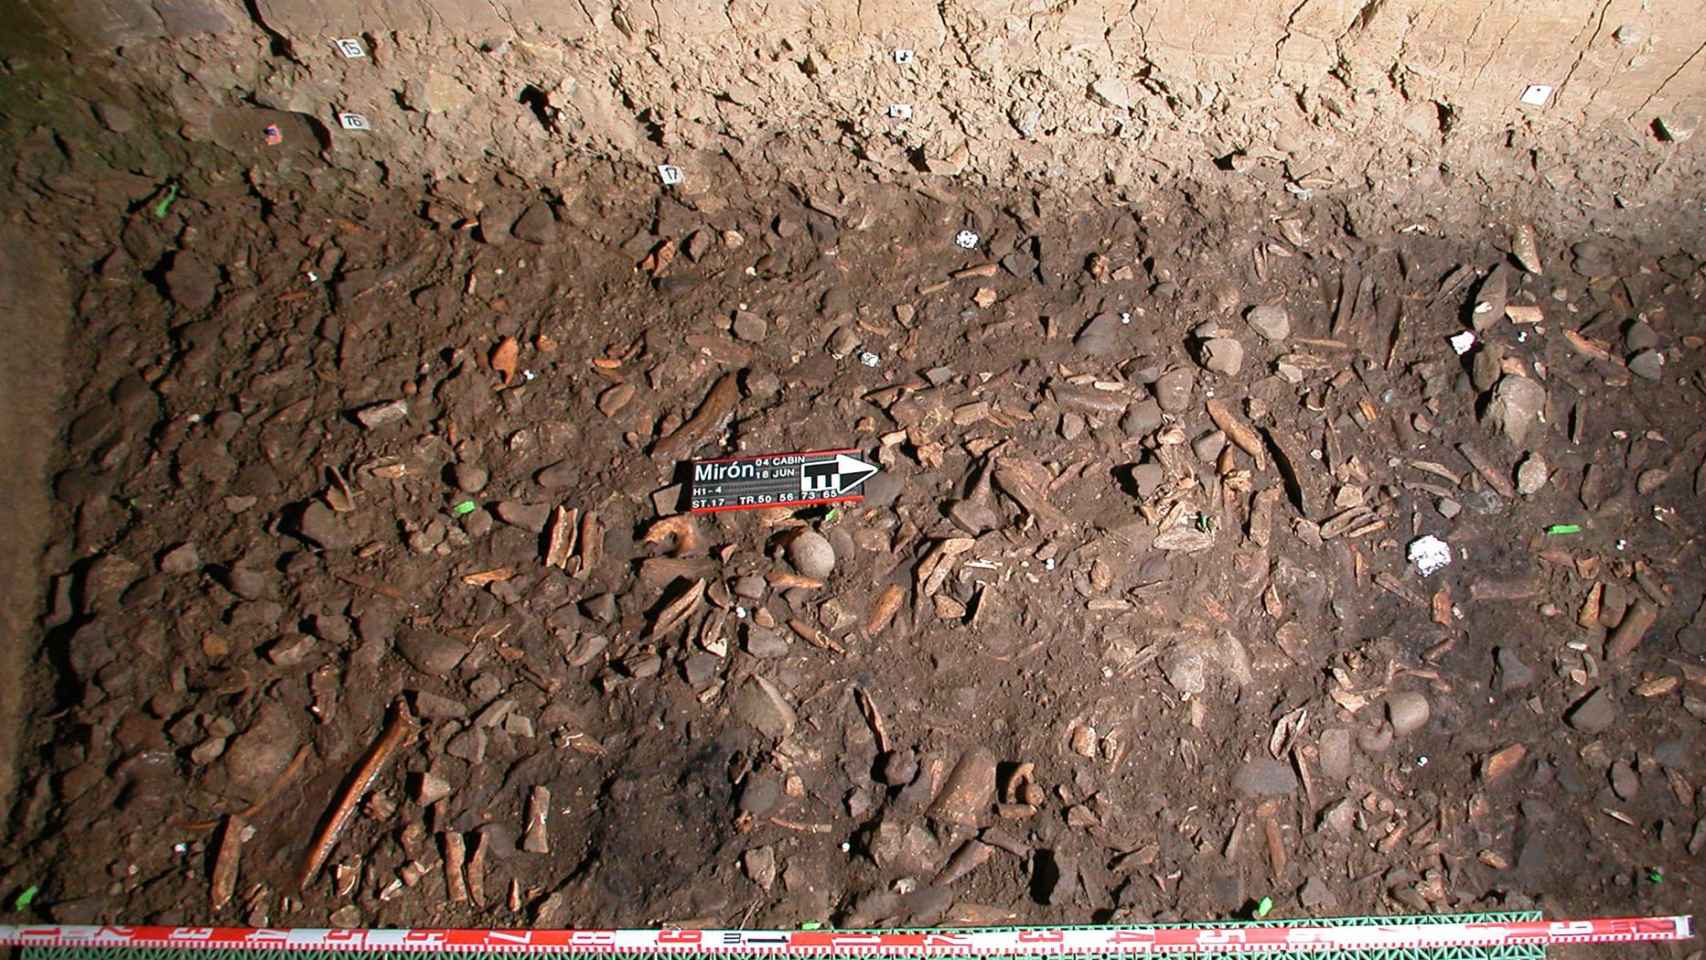 Los restos de un campamento del periodo magdaleniense en la cueva de El Mirón.